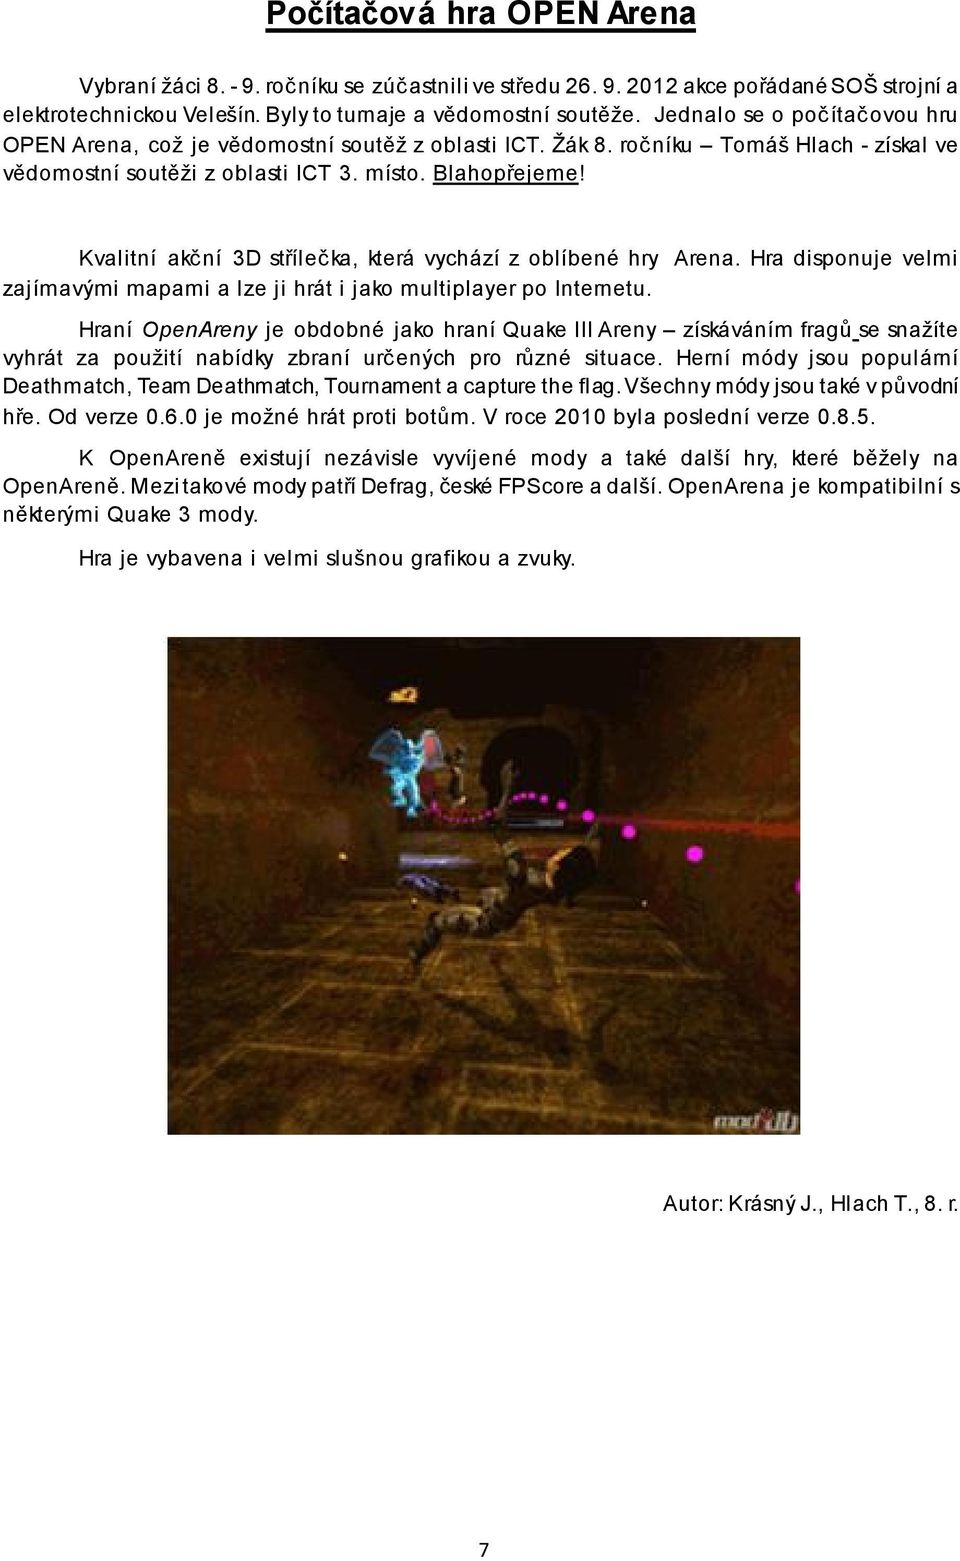 Kvalitní akční 3D střílečka, která vychází z oblíbené hry Arena. Hra disponuje velmi zajímavými mapami a lze ji hrát i jako multiplayer po Internetu.